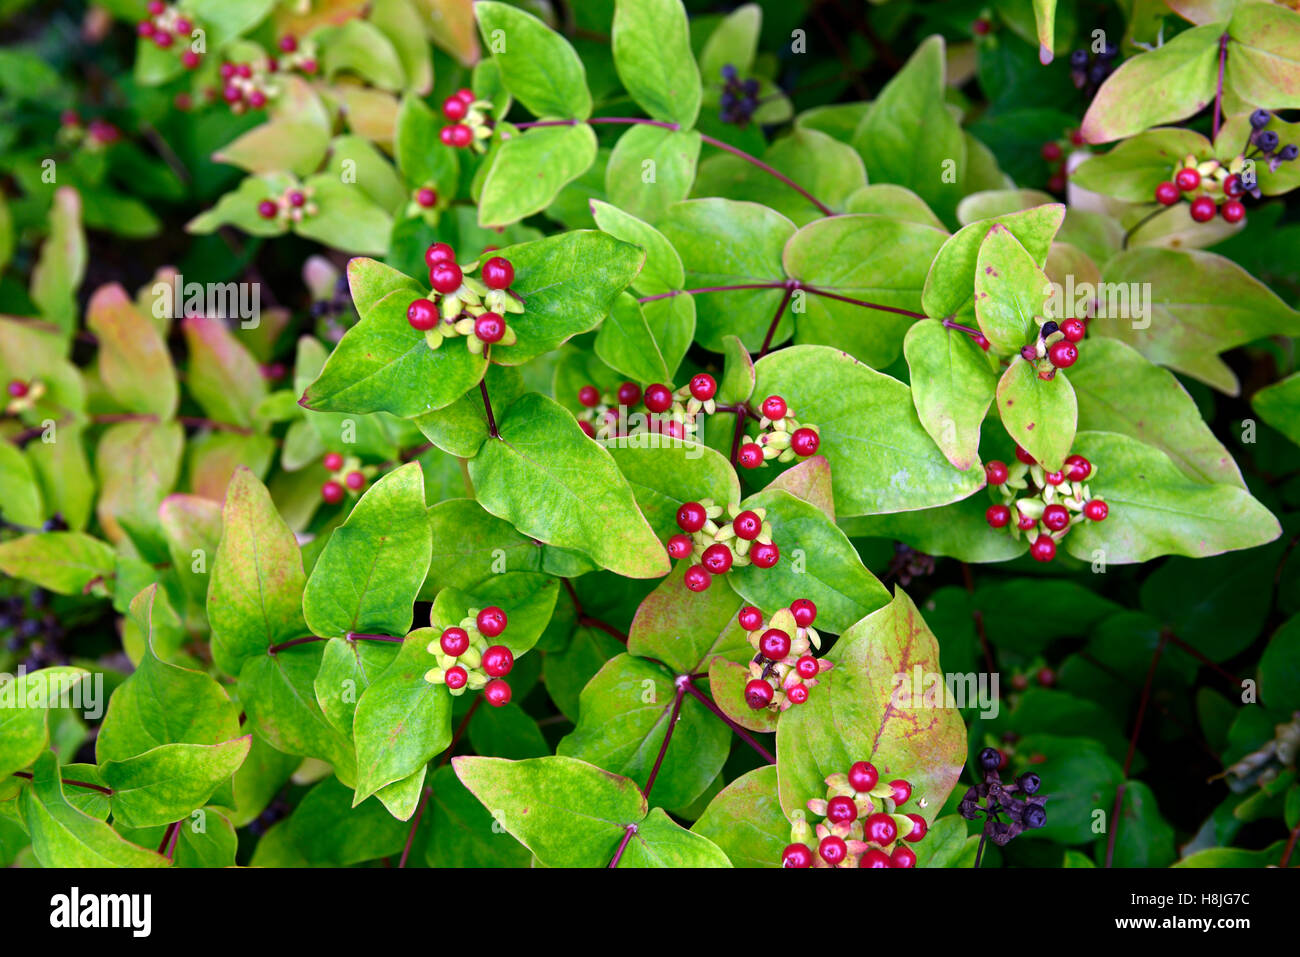 Hypericum androsaemum tutsan st Johns wort bacche rosse bacche medicinali frutta arbusto perenne della medicina tradizionale floreale RM Foto Stock